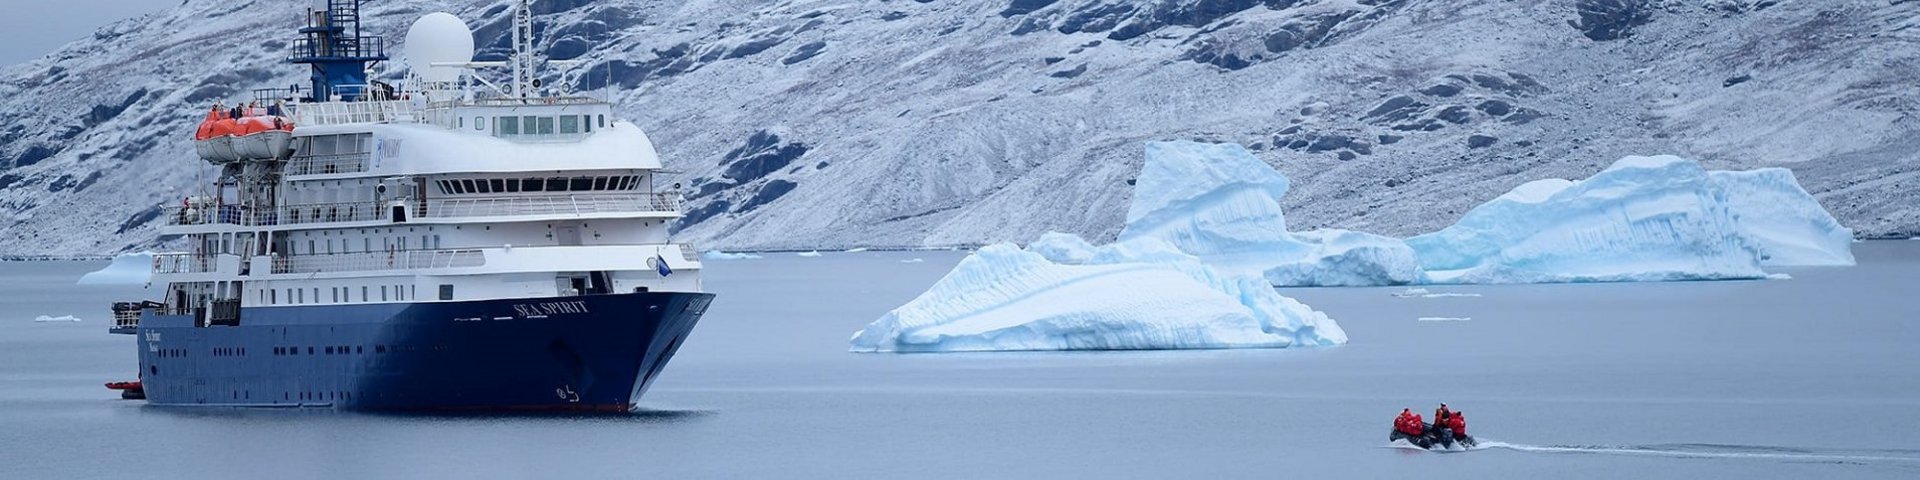 Die Sea Spirit ist ein regelmässiger Gast in der Antarktis